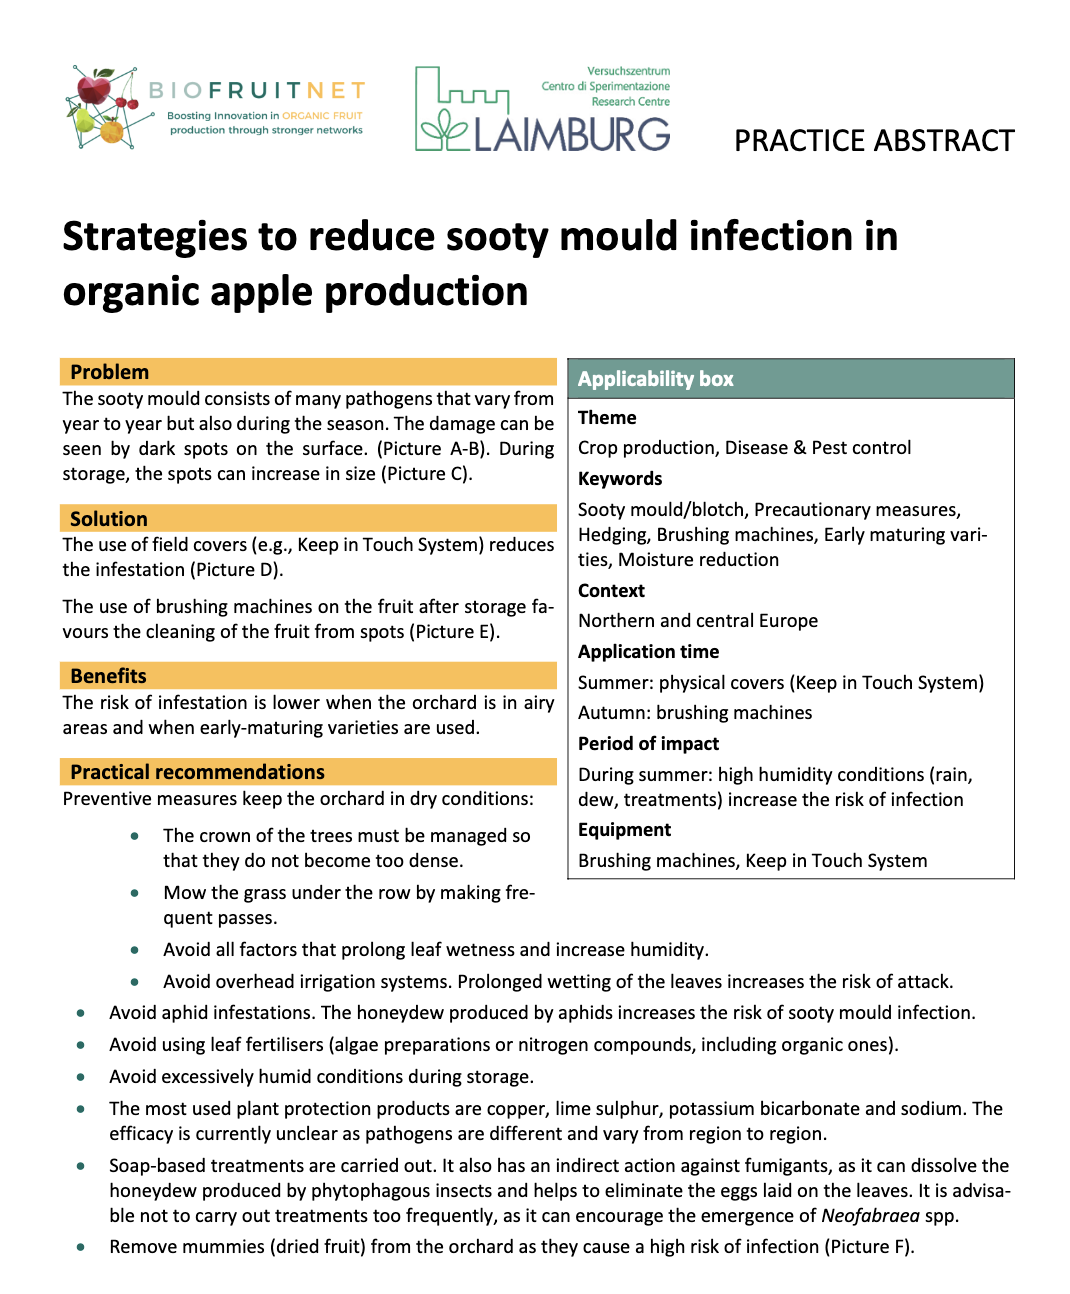 Strategier för att minska sotmögelinfektion i ekologisk äppleproduktion (BIOFRUITNET Practice Abstract)